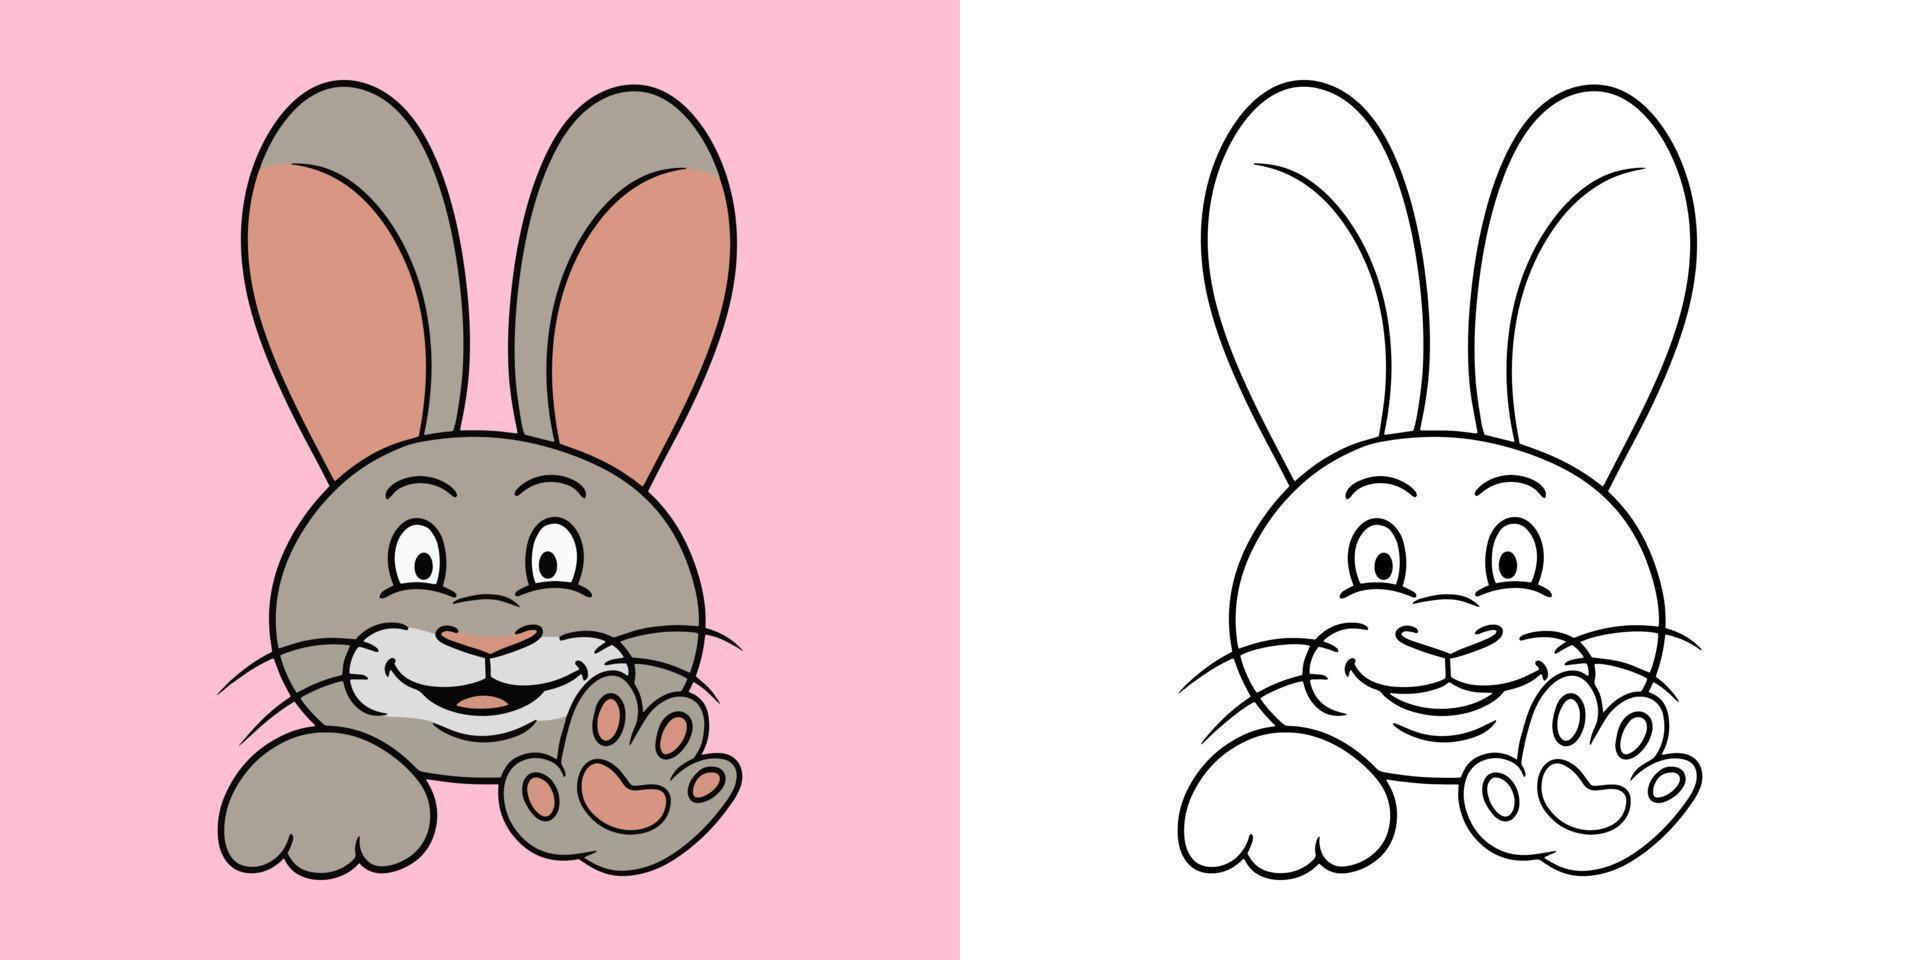 serie orizzontale di immagini, simpatico coniglio carino sorridente e agitando la zampa, illustrazione vettoriale in stile cartone animato, libro da colorare